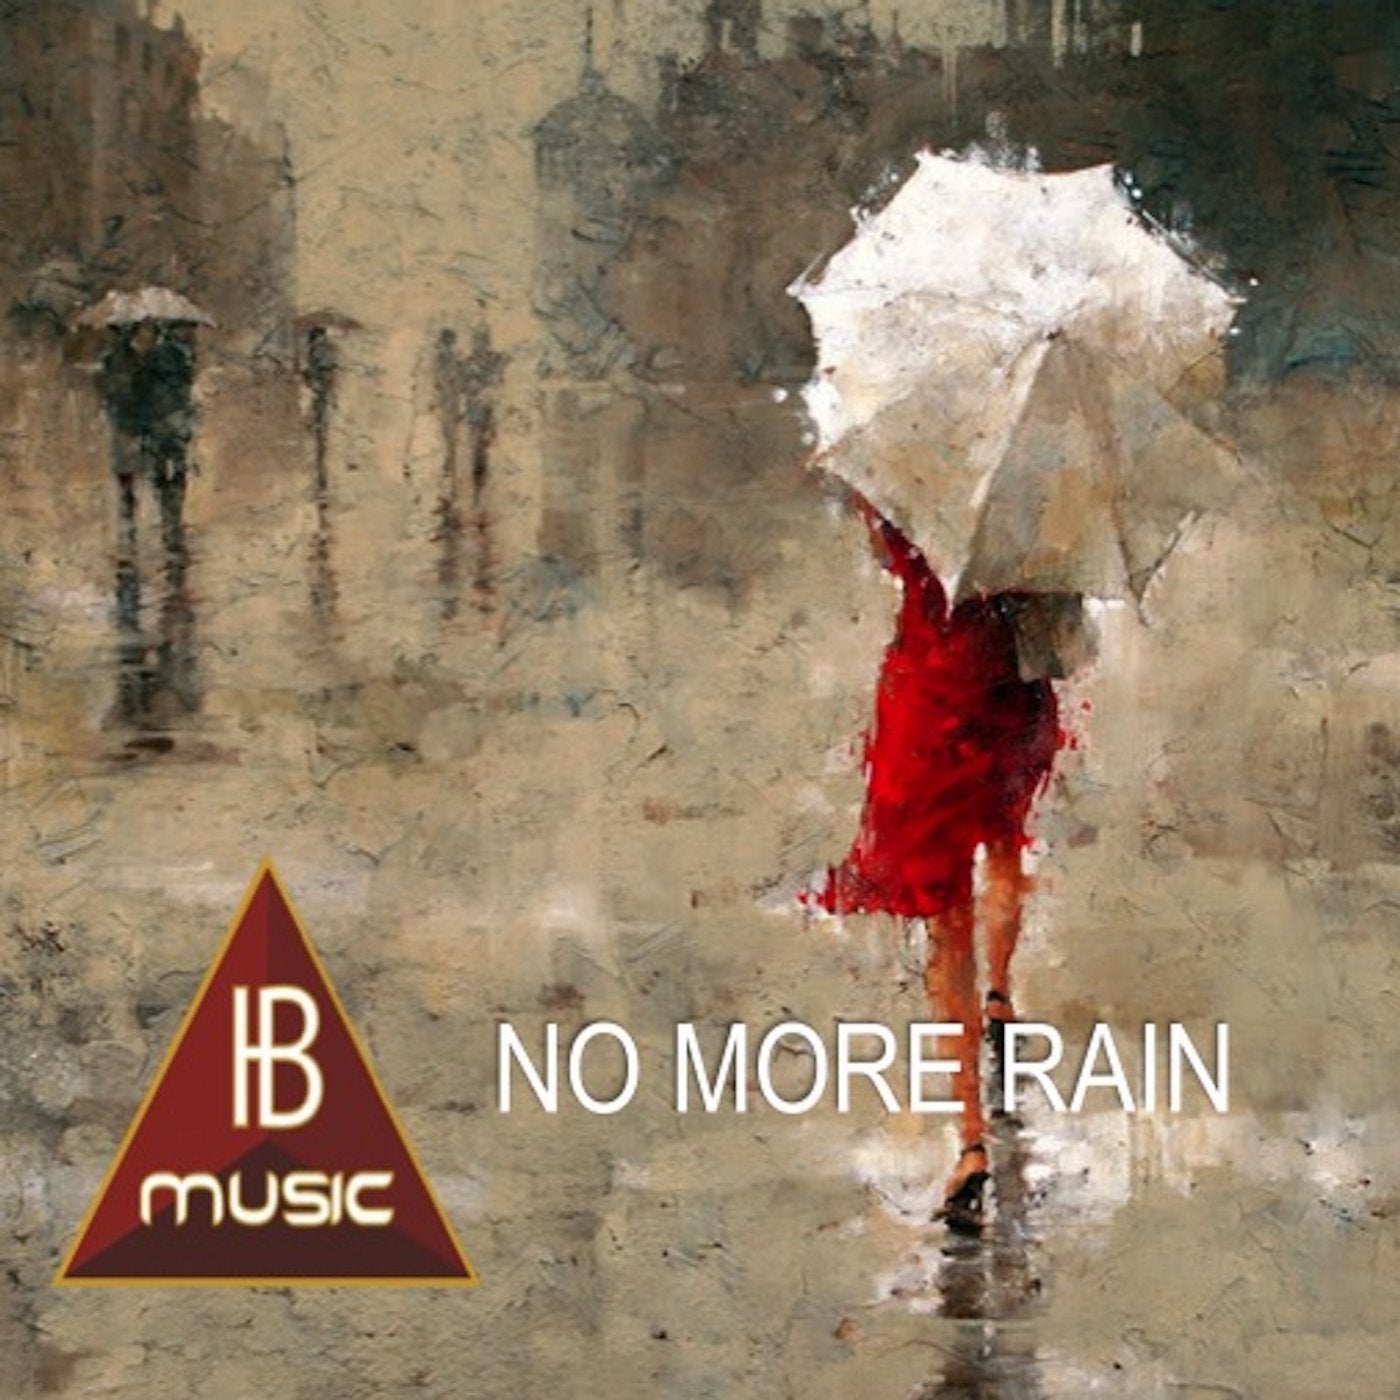 No More Rain (Ib Music Ibiza)